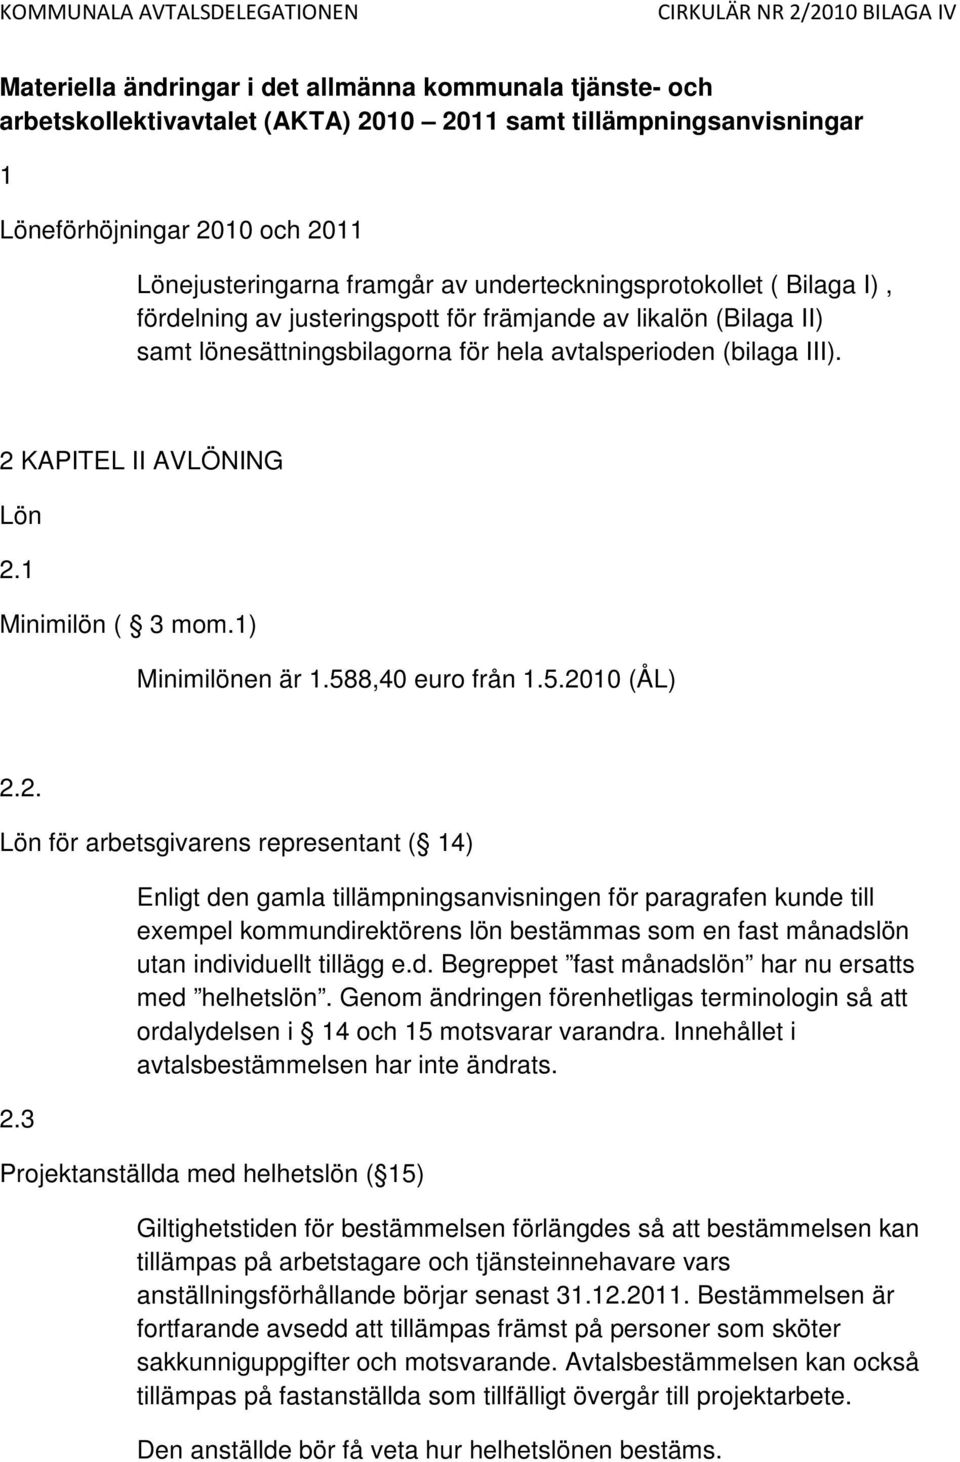 1 Minimilön ( 3 mom.1) Minimilönen är 1.588,40 euro från 1.5.2010 (ÅL) 2.2. Lön för arbetsgivarens representant ( 14) 2.